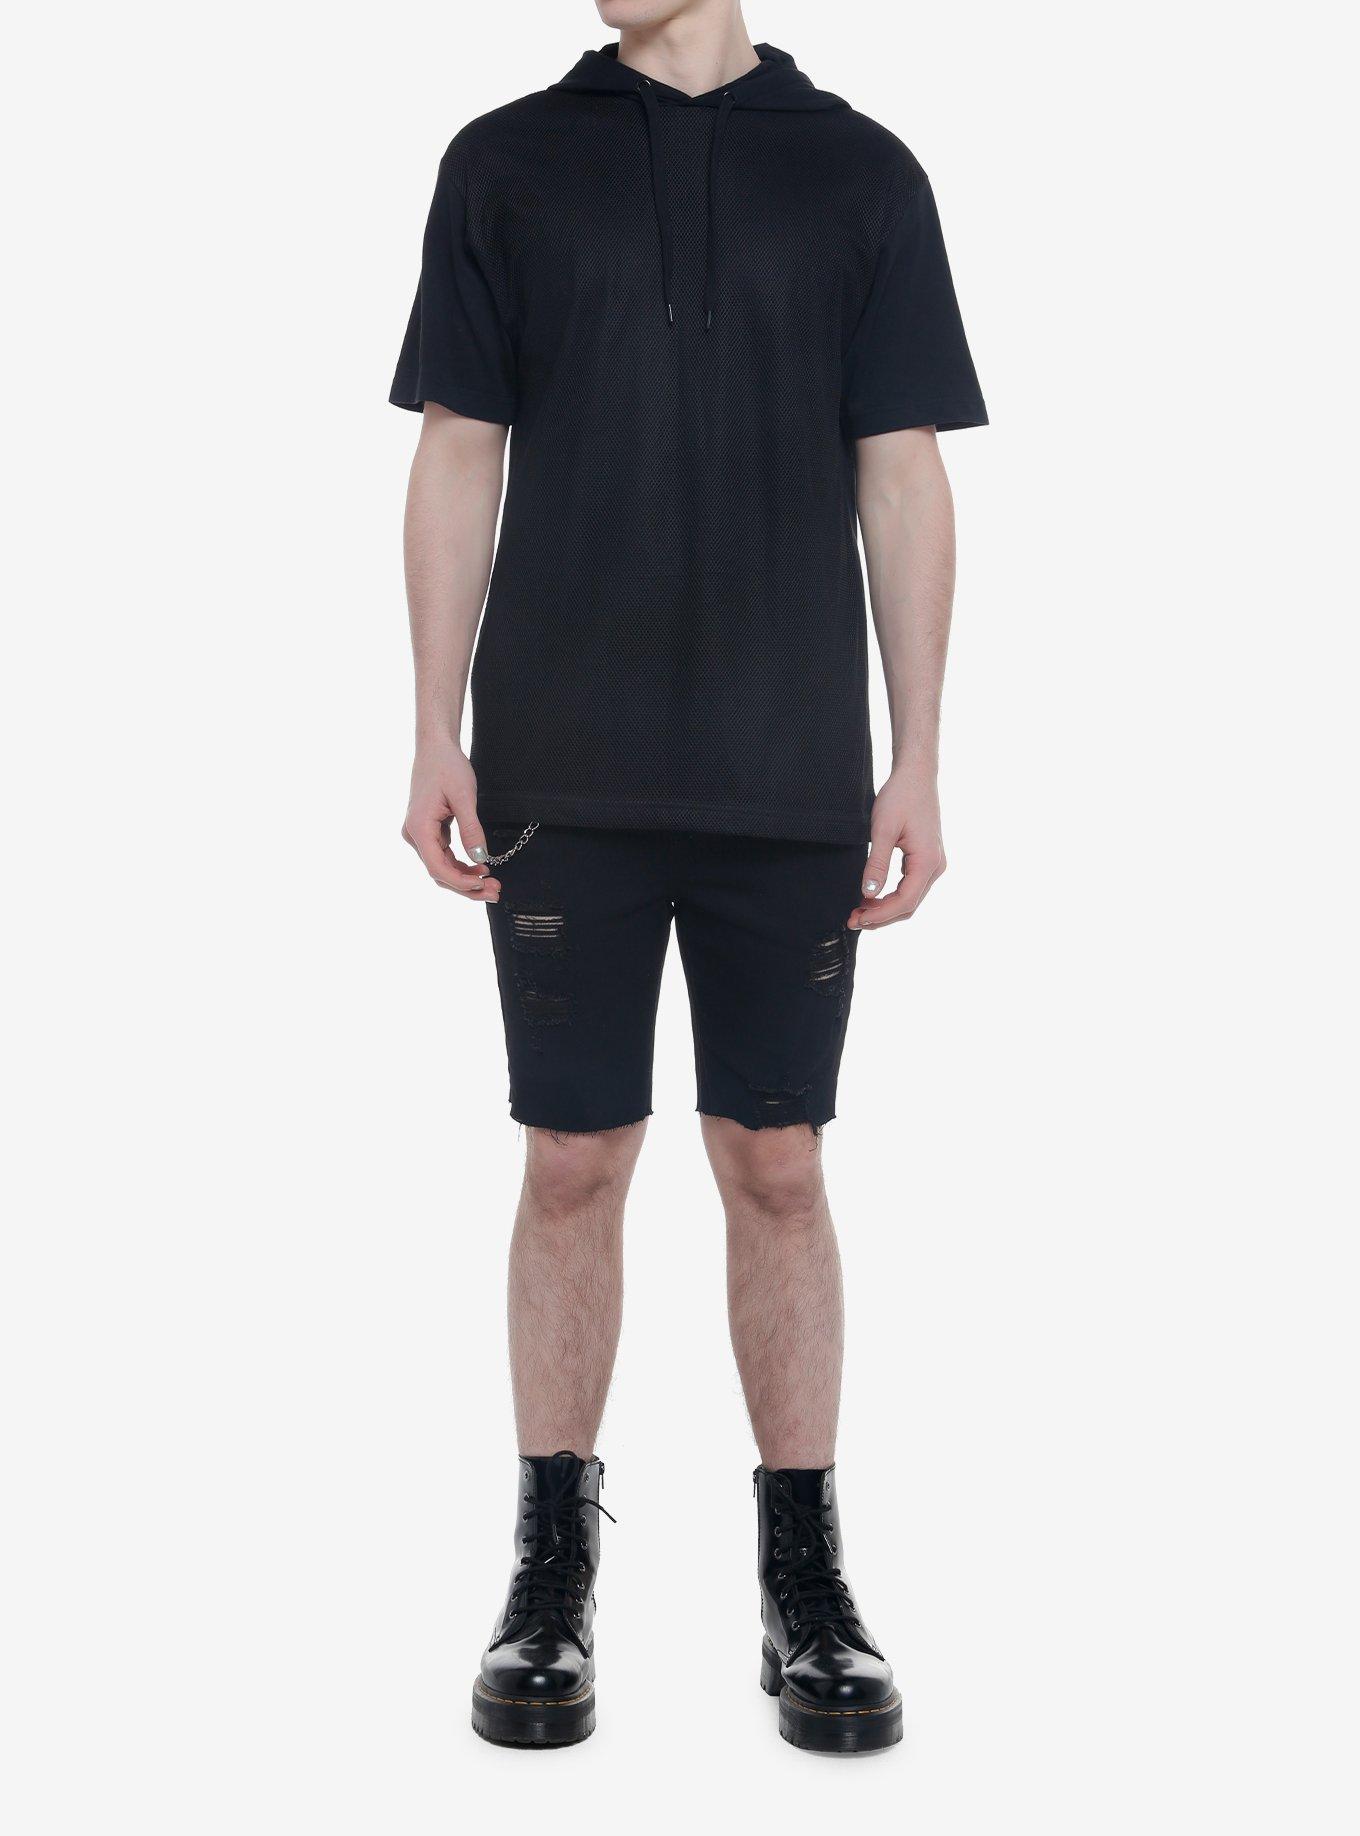 Black Mesh Hooded T-Shirt, BLACK, alternate